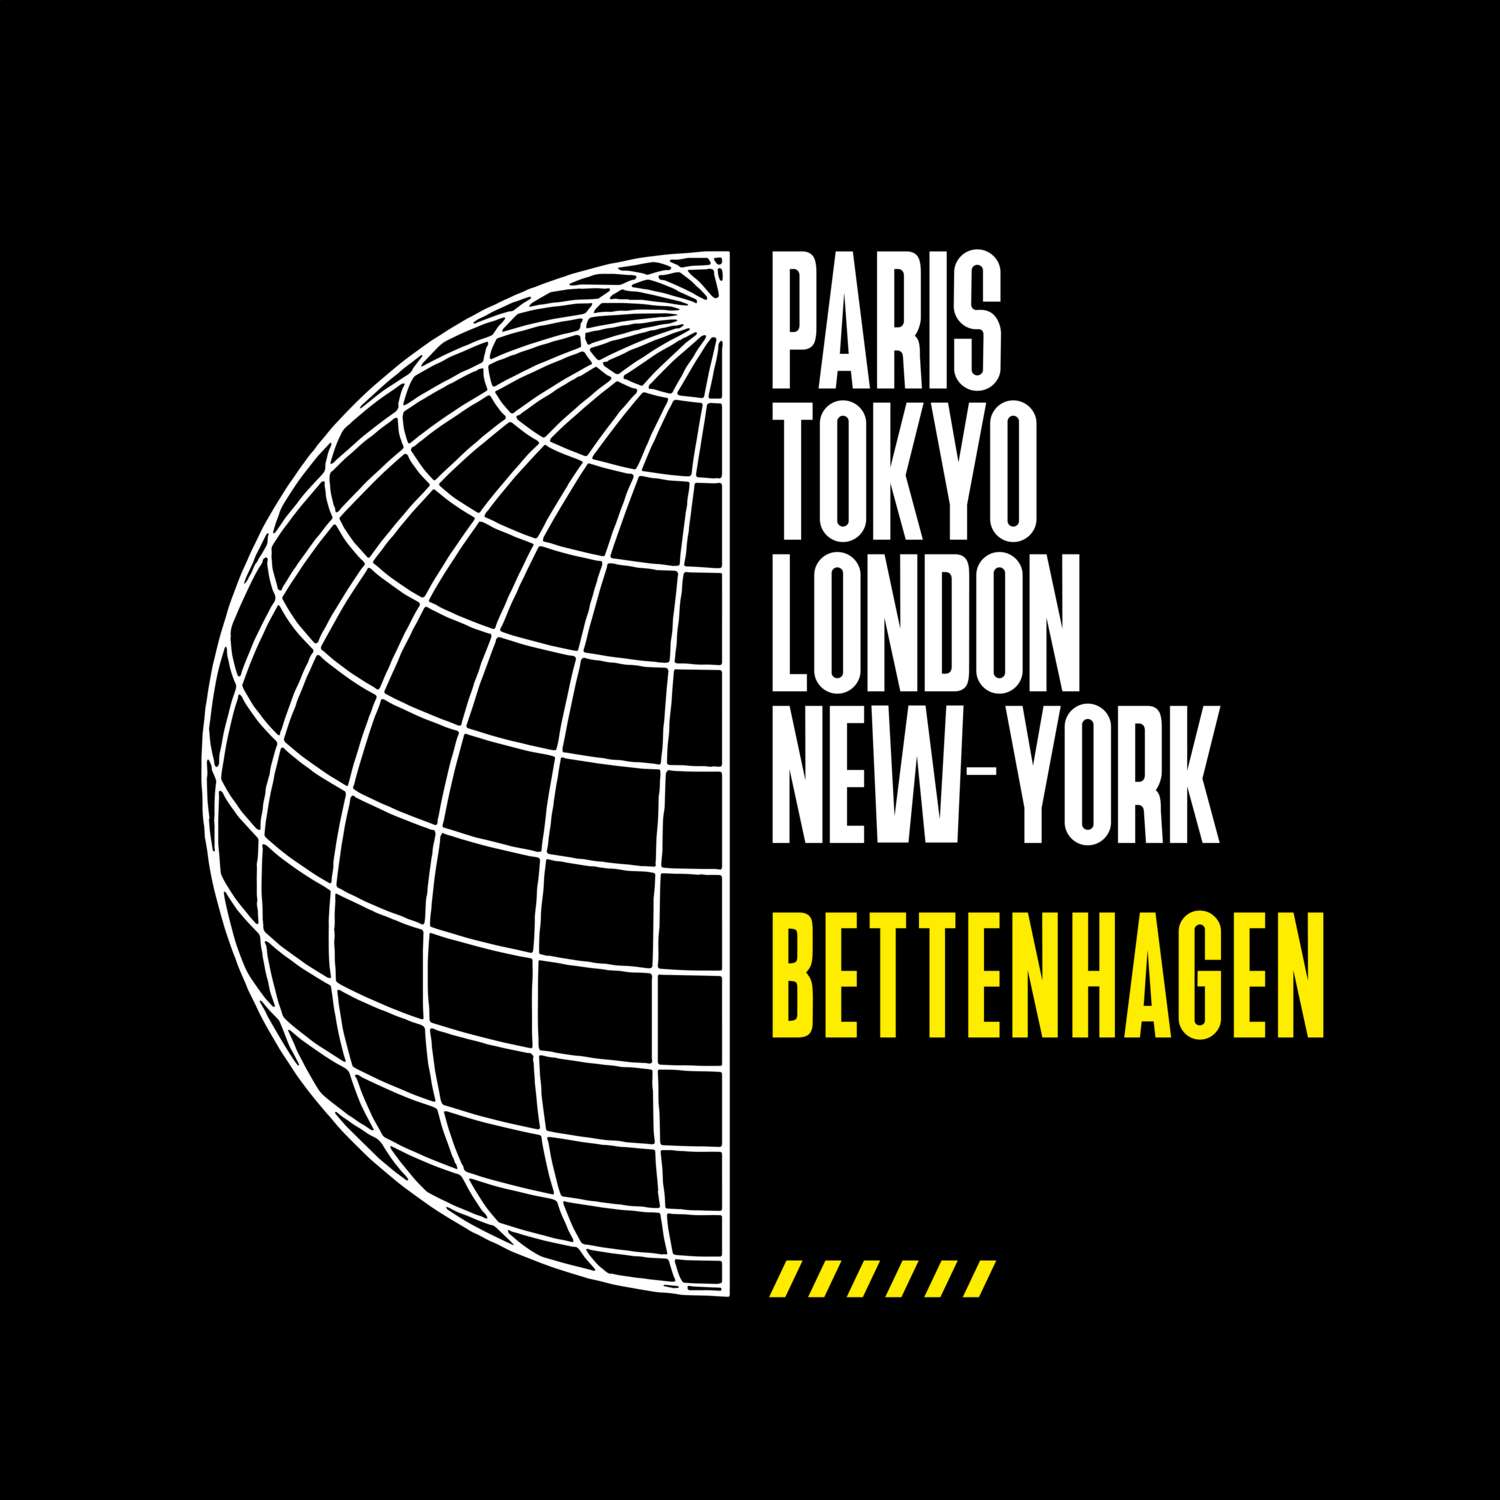 Bettenhagen T-Shirt »Paris Tokyo London«